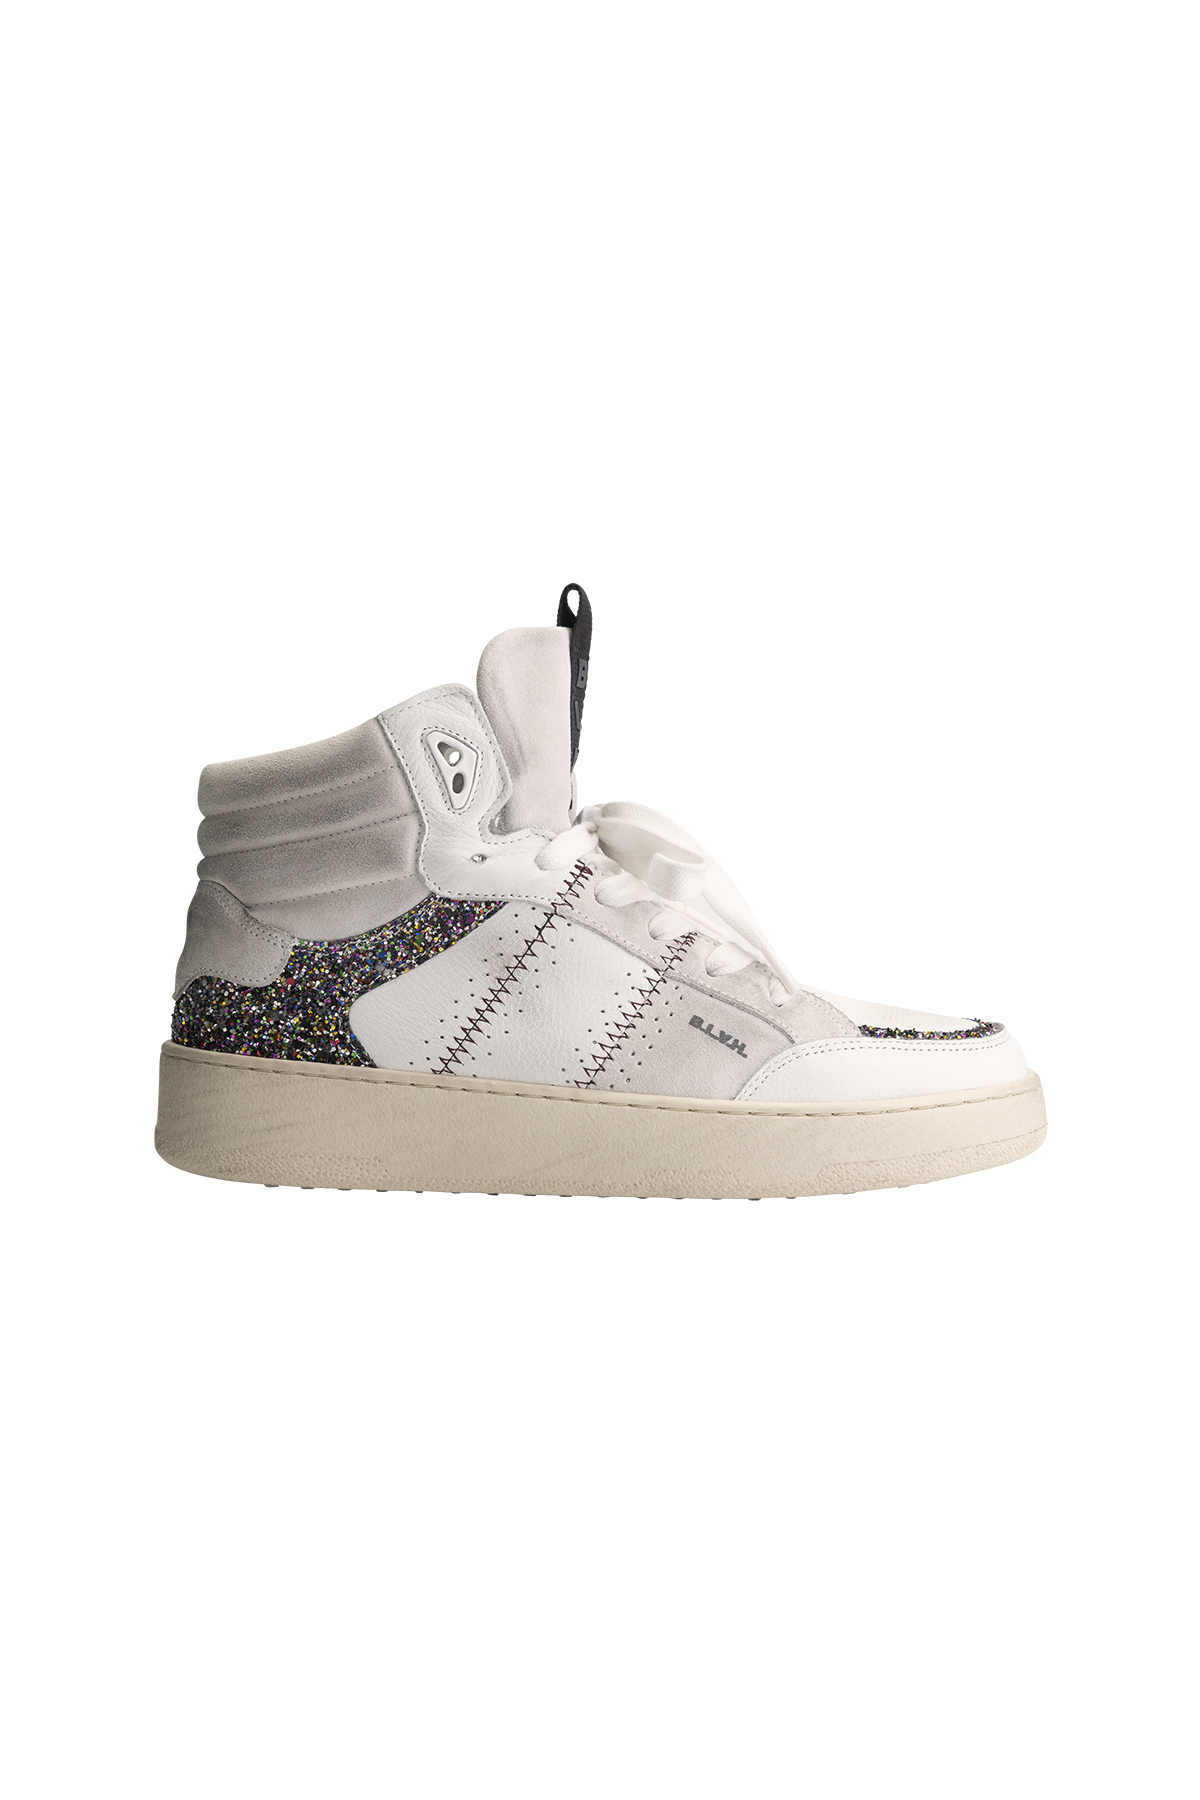 BLAH Jenn Sneaker - White Multi Glitter - RUM Amsterdam